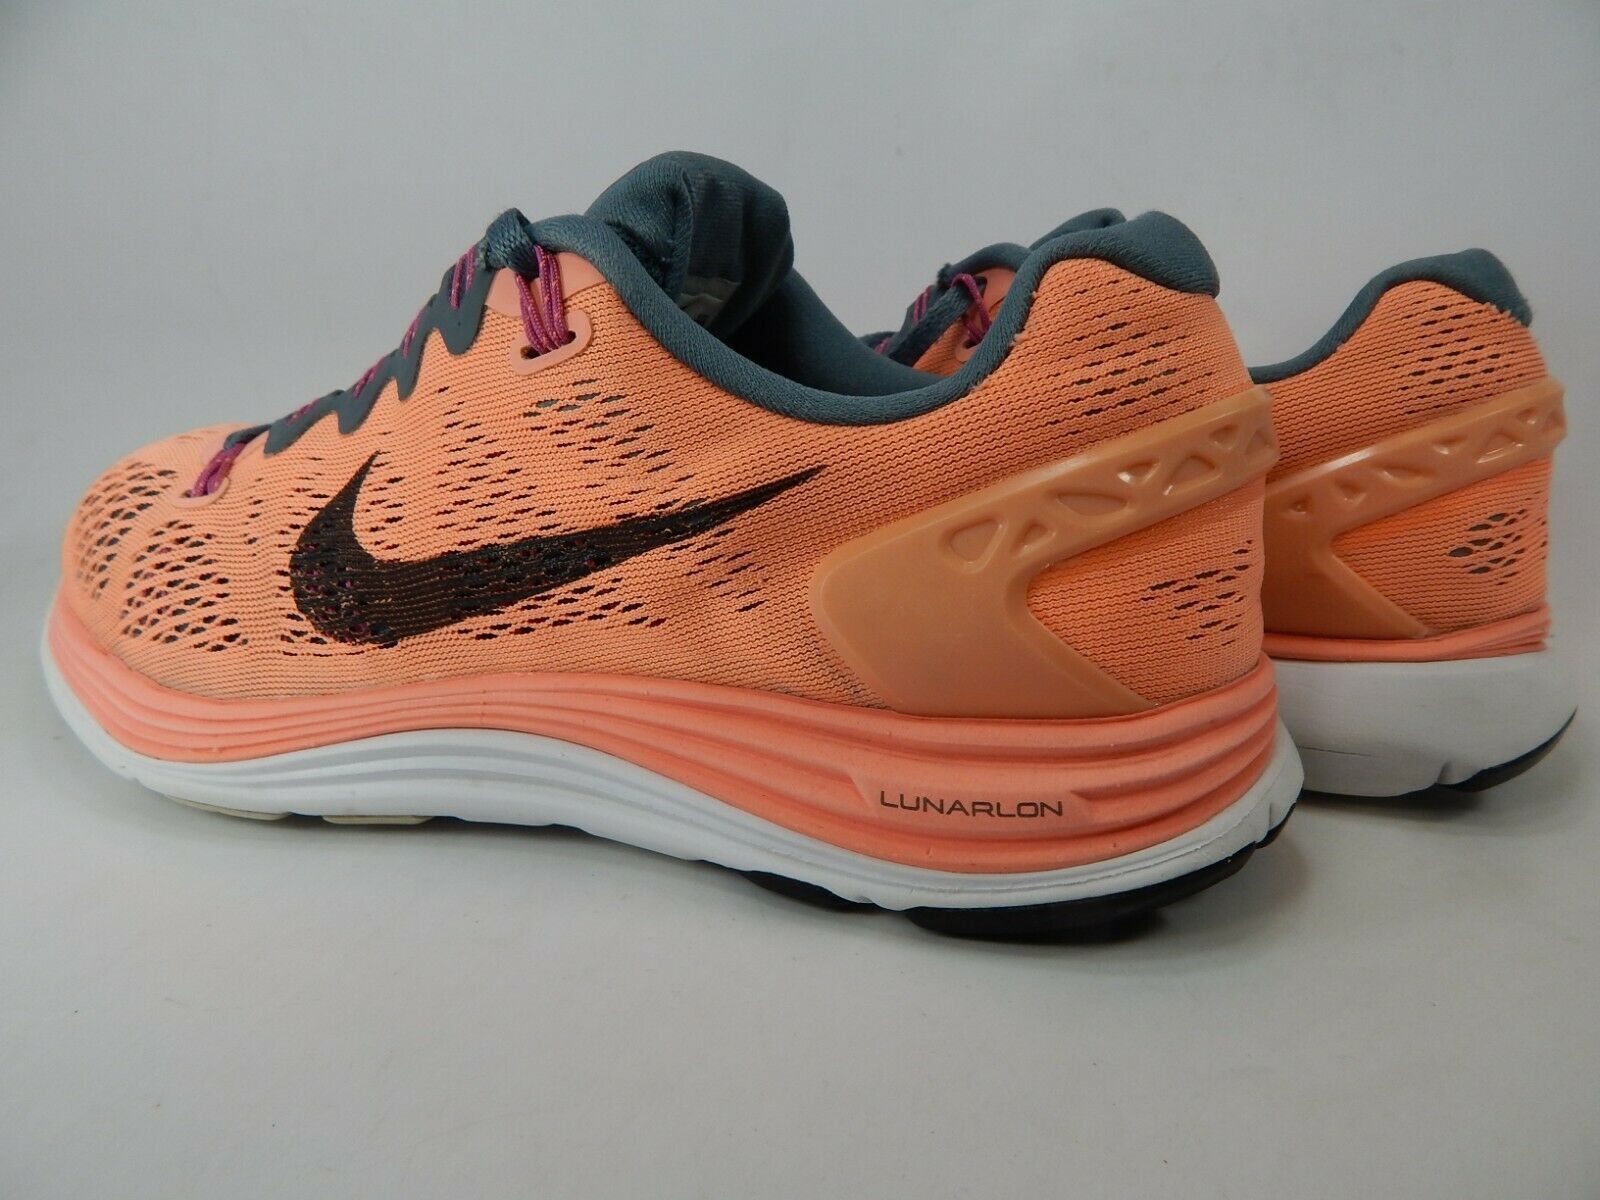 Nike LunarGlide 5 Size US 9 M (B) EU 40.5 Women's Running Shoes Pink ...